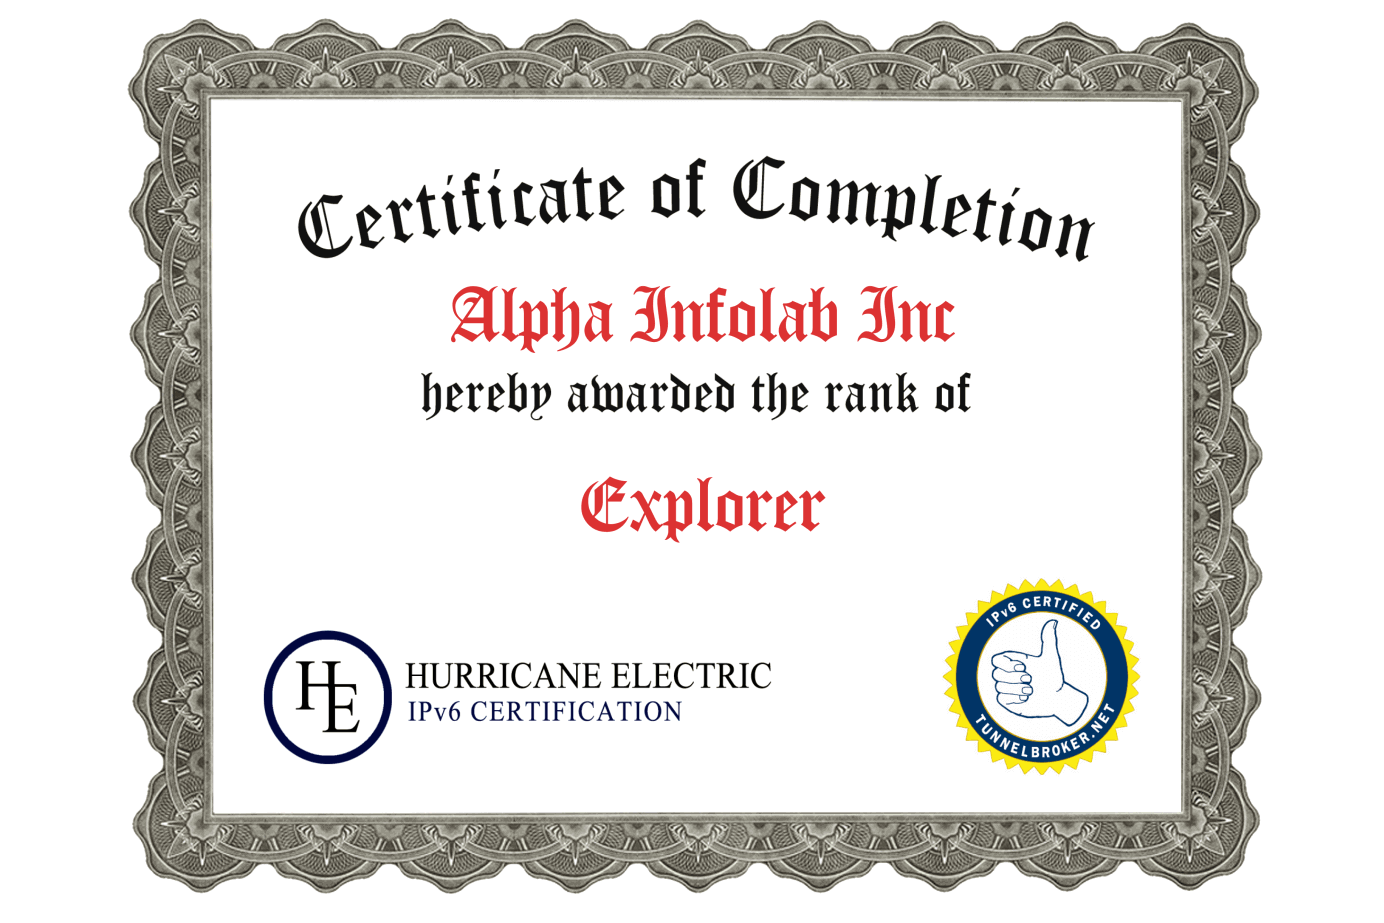 2A-Certificate